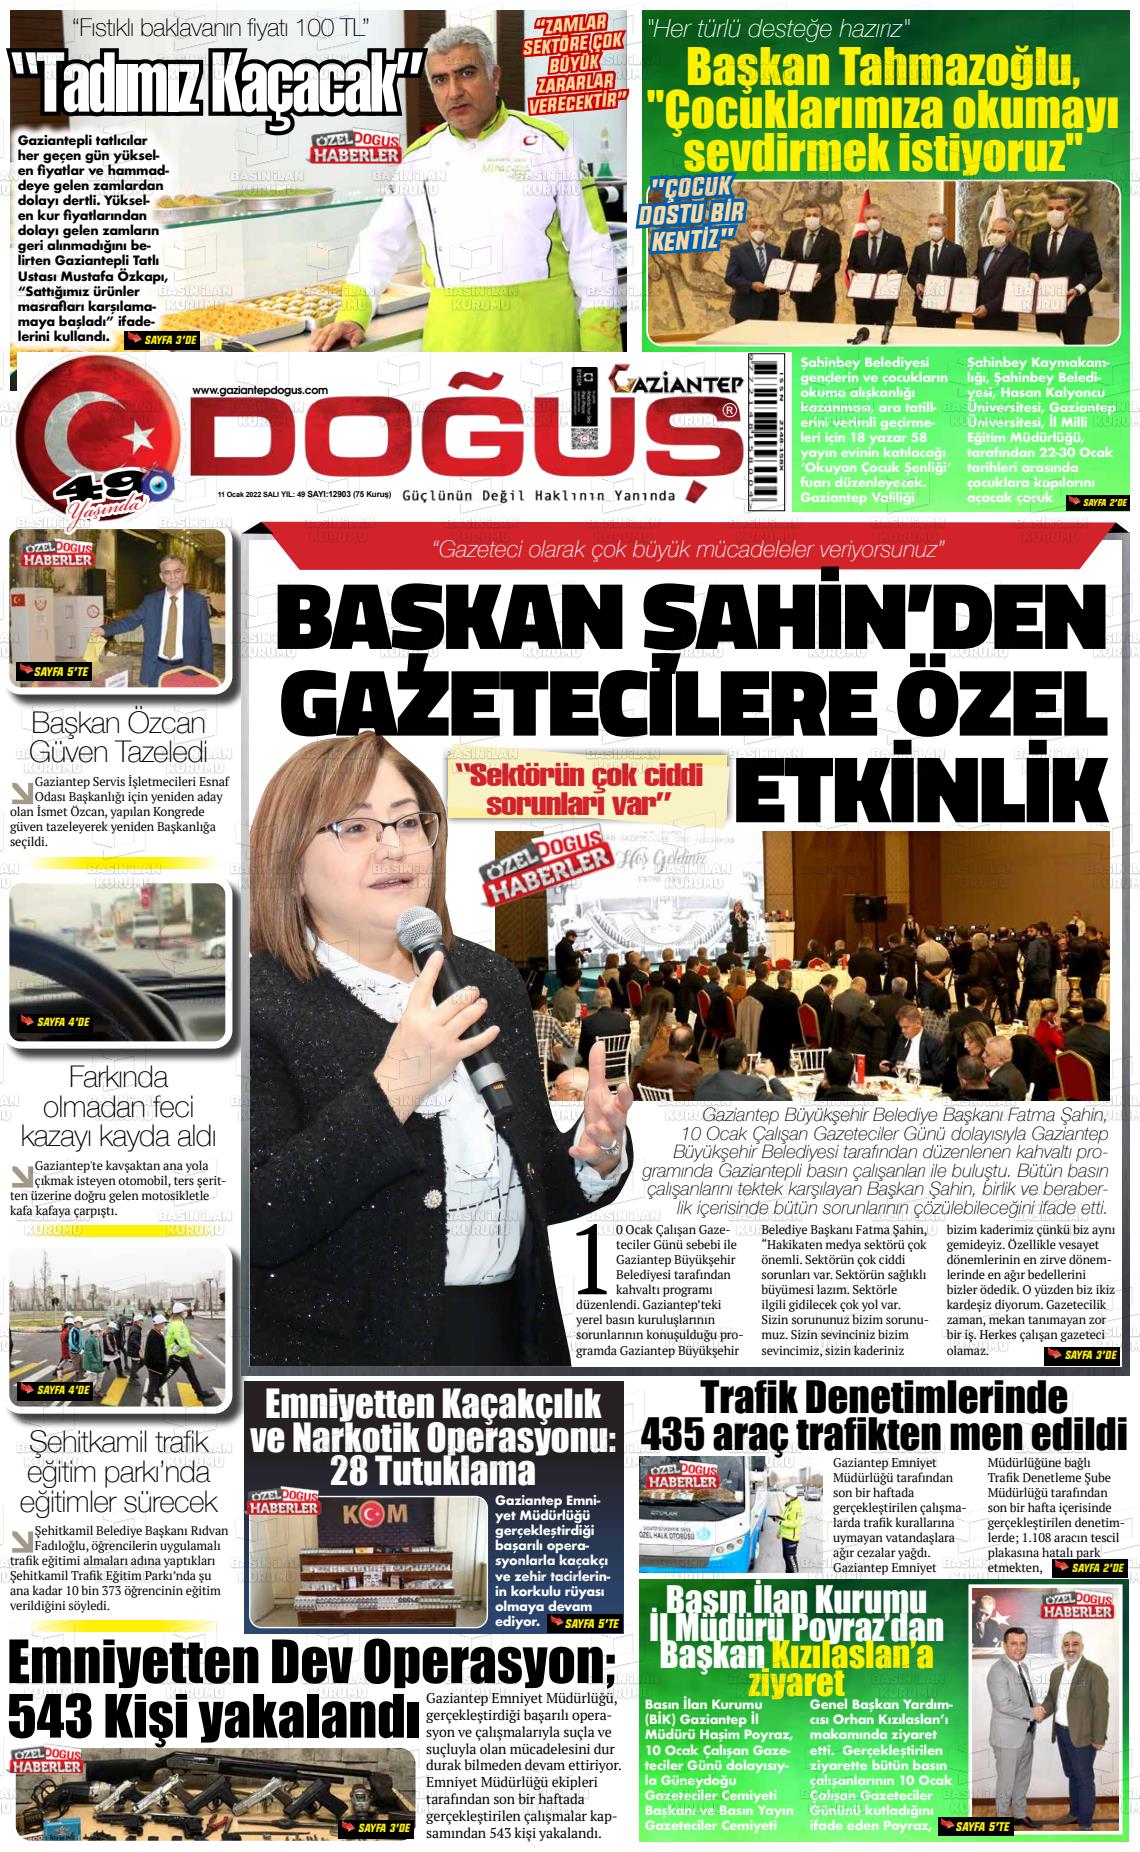 11 Ocak 2022 Gaziantep Doğuş Gazete Manşeti